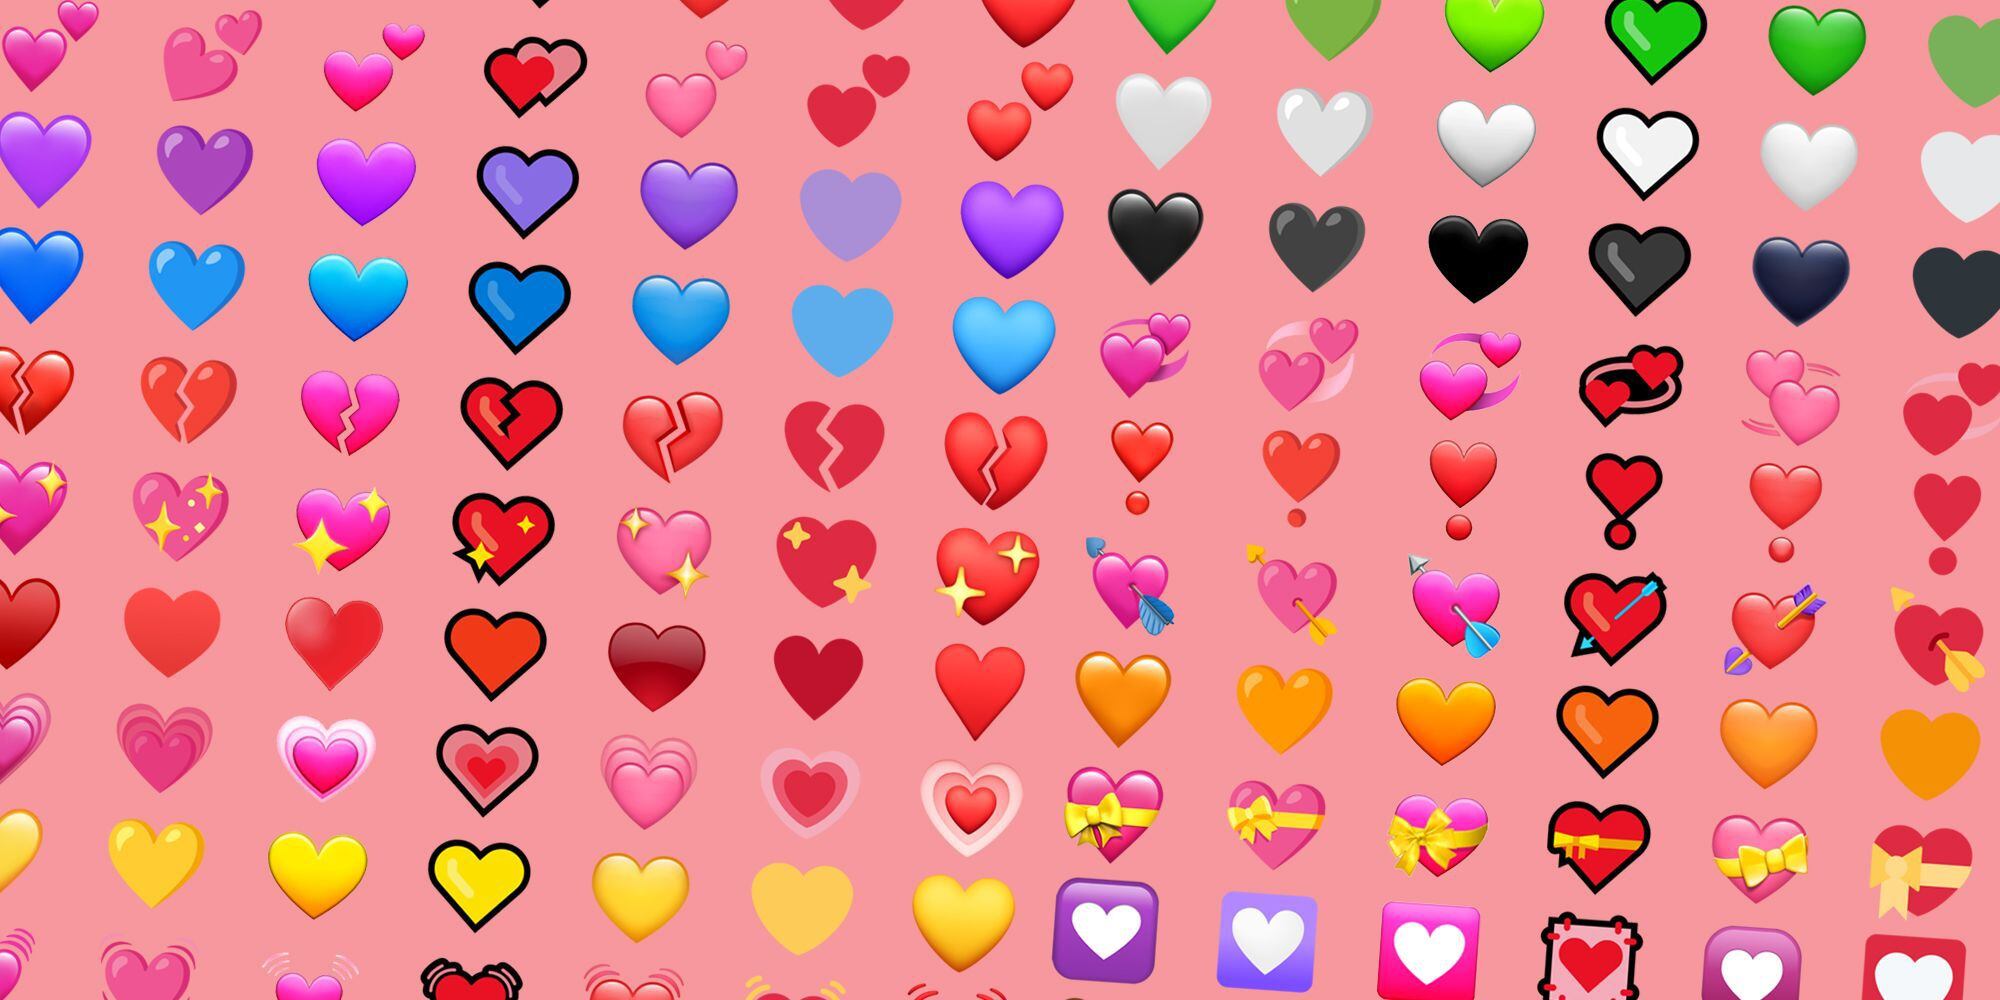 El corazón azul siempre ha figurado como uno de los emojis más utilizados en redes sociales. (Emojipedia)